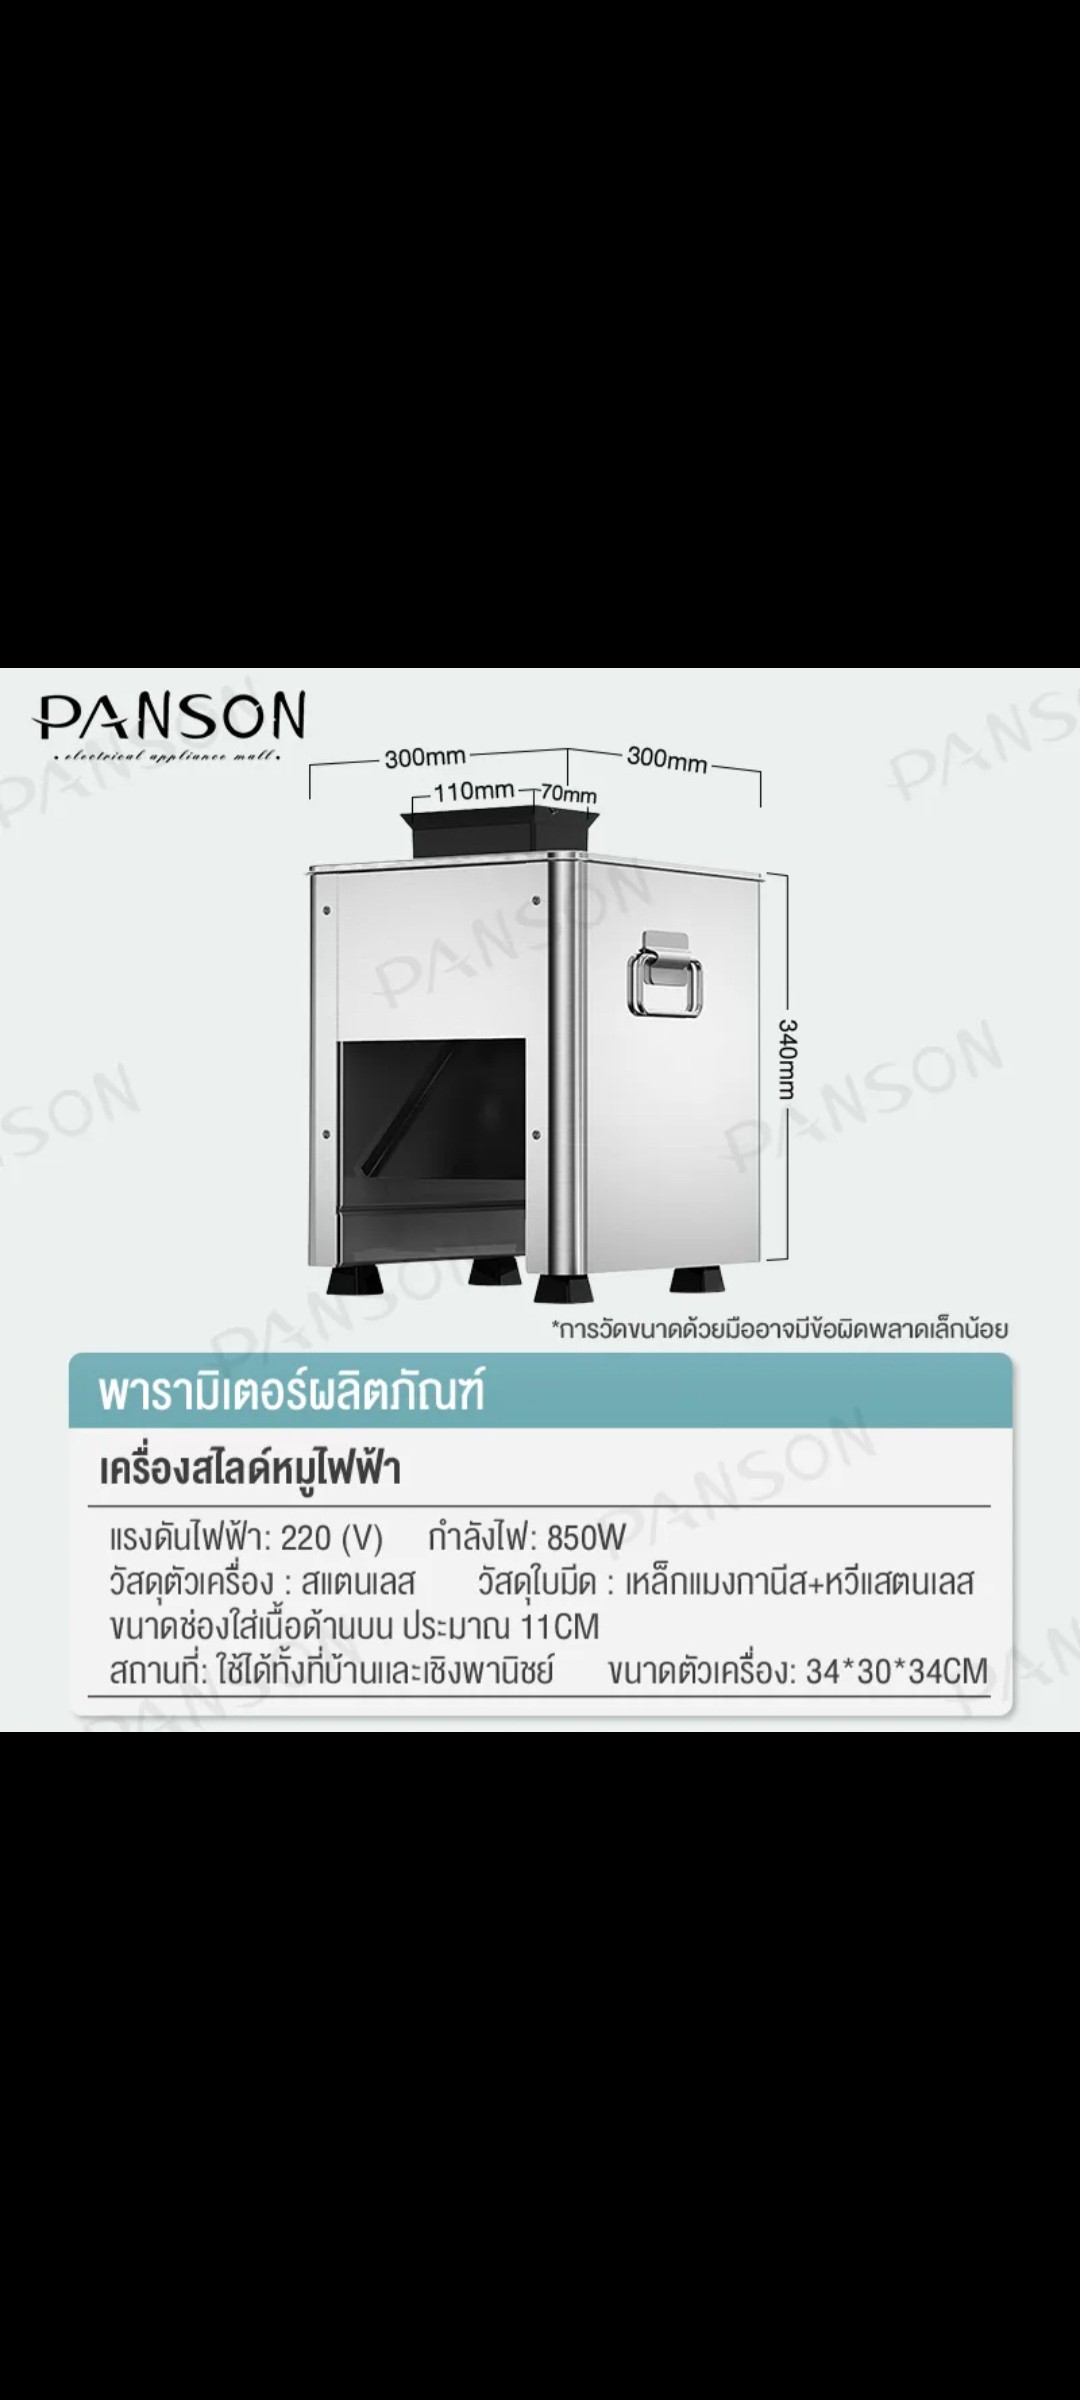 ເຄື່ອງສະໄລ້ຊີ້ນ ຍີ່ຫໍ້: PANSON ລຸ້ນ: 2.5mm. ກຳລັງໄຟ 850W, ເໝາະກັບຮ້ານຊີ້ນດາດ-ຈຸ່ມ ເຮັດໃຫ້ການສະໄລ້ຊີ້ນສະດວກສະບາຍ, ປະຫຍັດເວລາປະຫຍັດແຮງງານ.